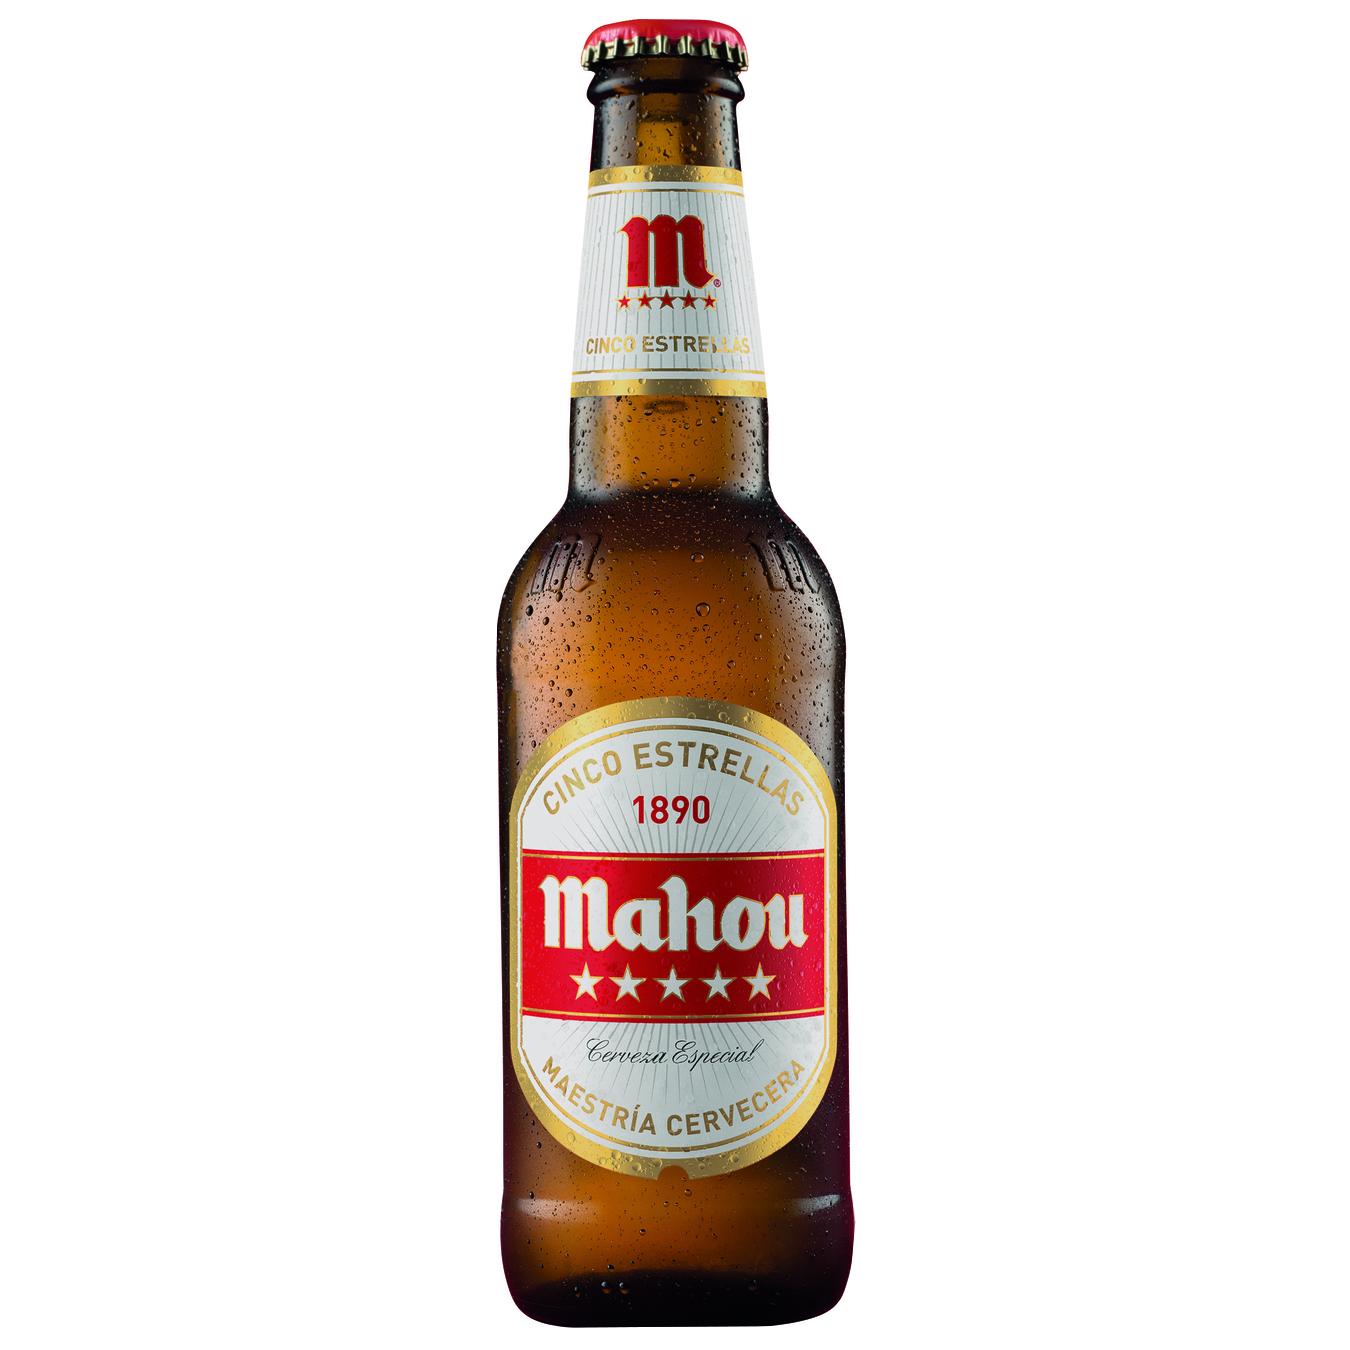 Light beer Mahou 5 estrellas 5.5% 0.33l glass